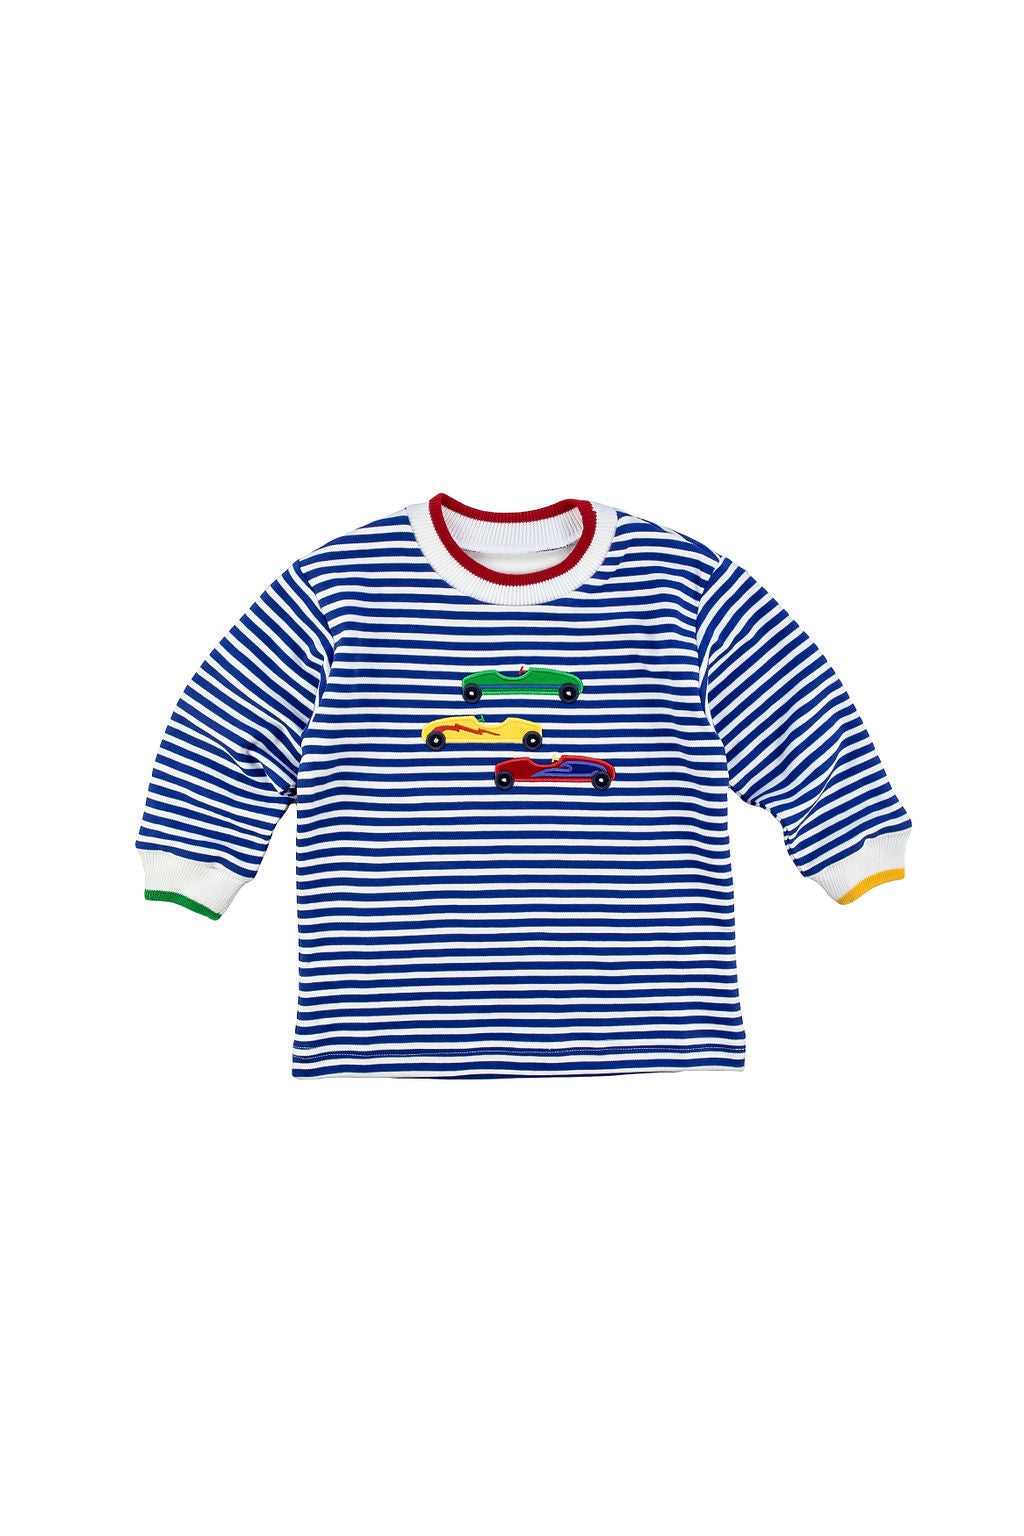 Florence Eiseman Royal/White Stripe Knit Shirt W/Derby Cars H5043 5009